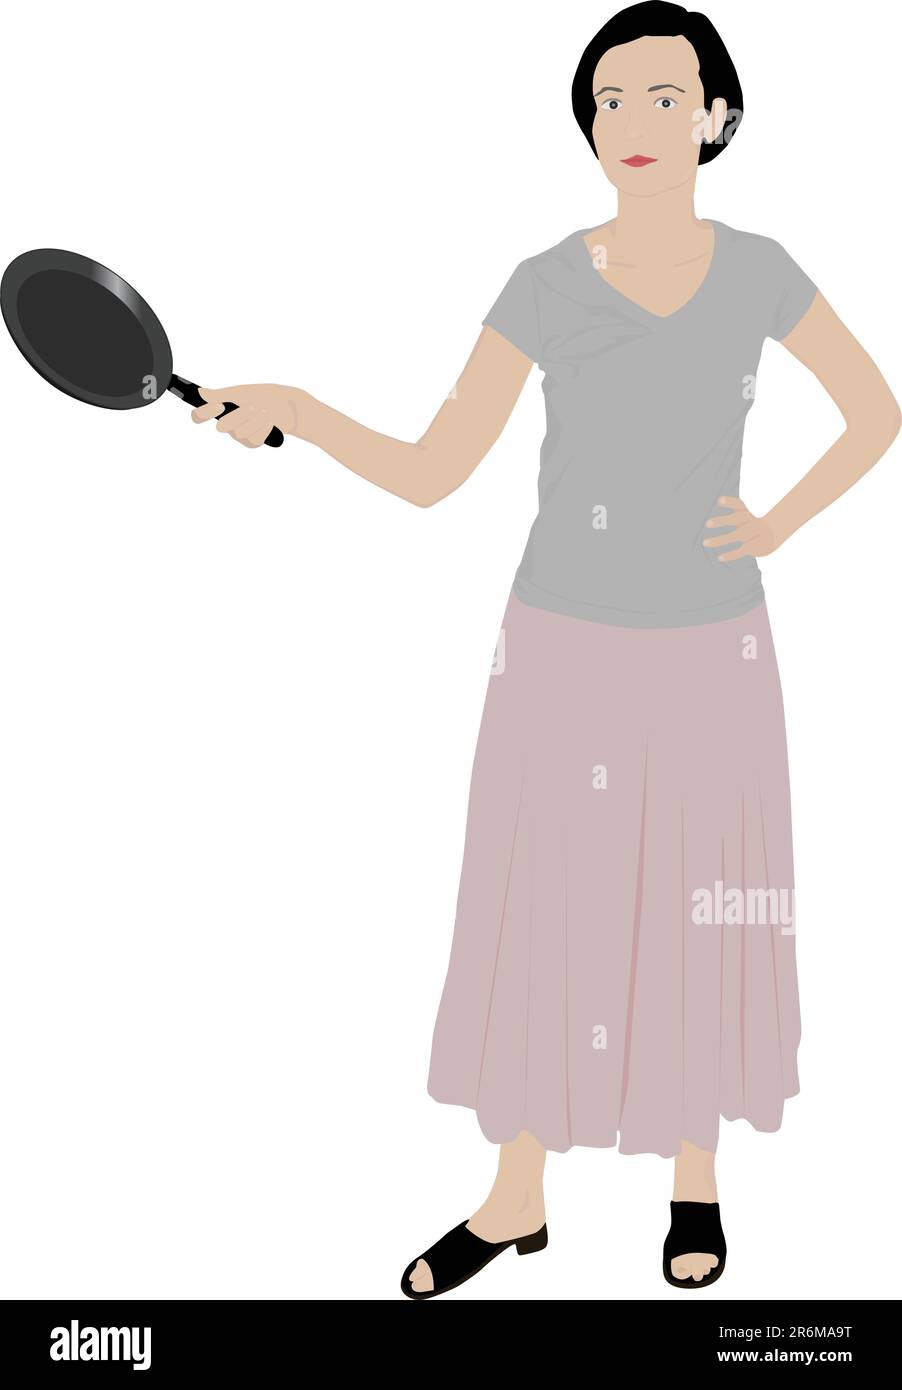 belle illustration de fille tenant une poêle de cuisine Illustration de Vecteur